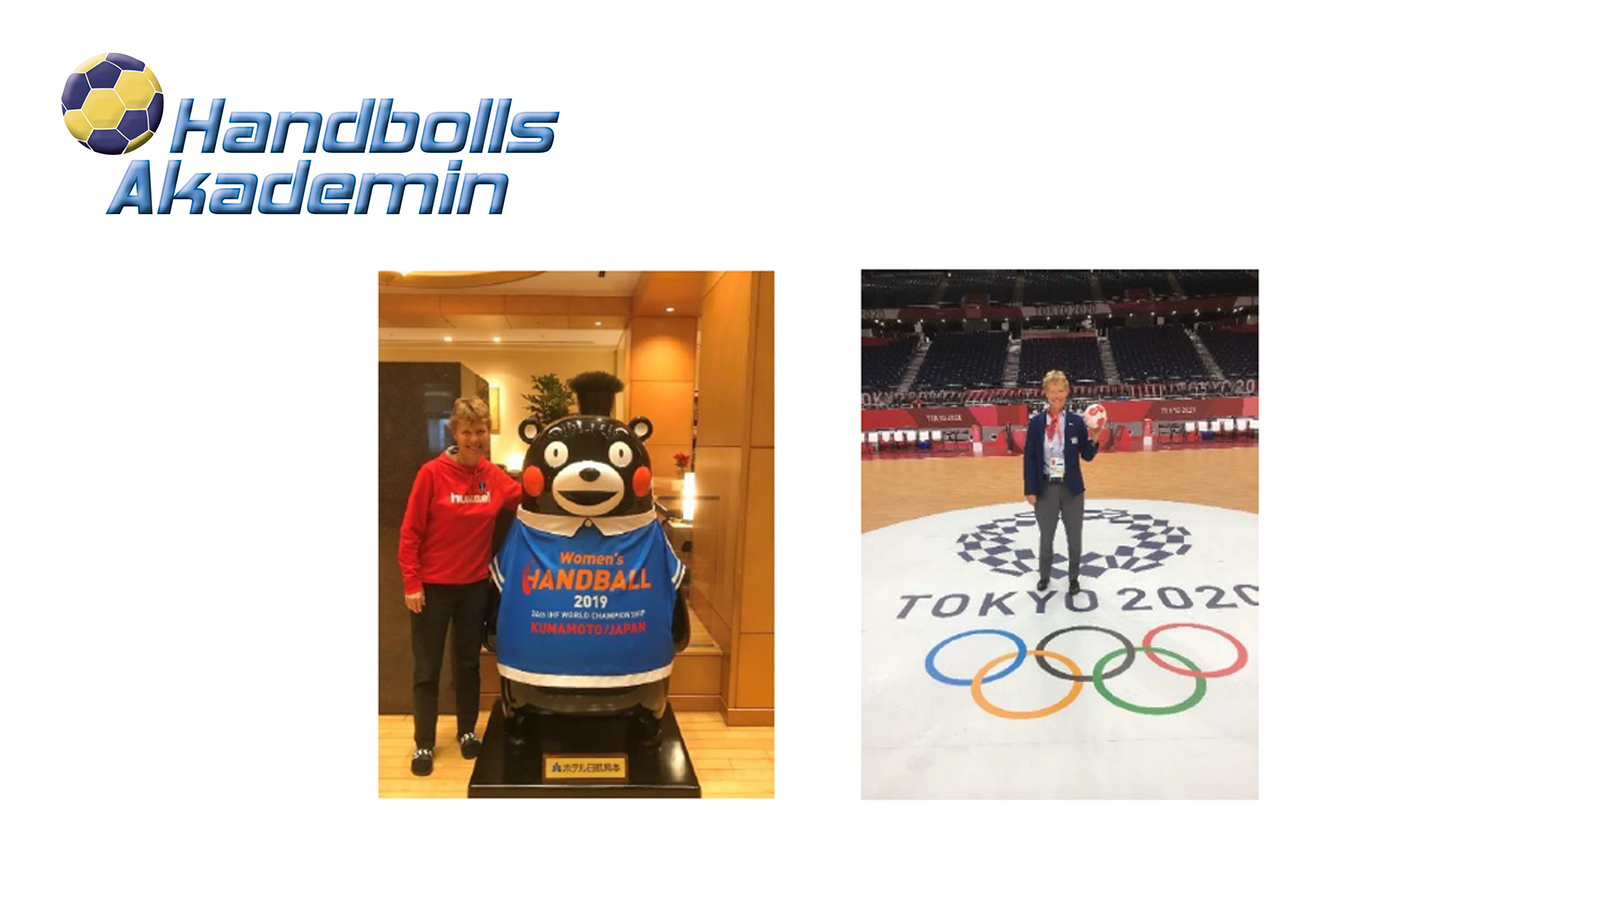 ett fotomontage av en logga för handbollsakademin med en handboll ovanför. en bild där en kvinna står med en maskot för womens handball 2019 i japan och en bild till höger om den andra där en kvinna håller i en handboll och står på en handbollsplan där det står tokyo 2020 och OS ringarna.